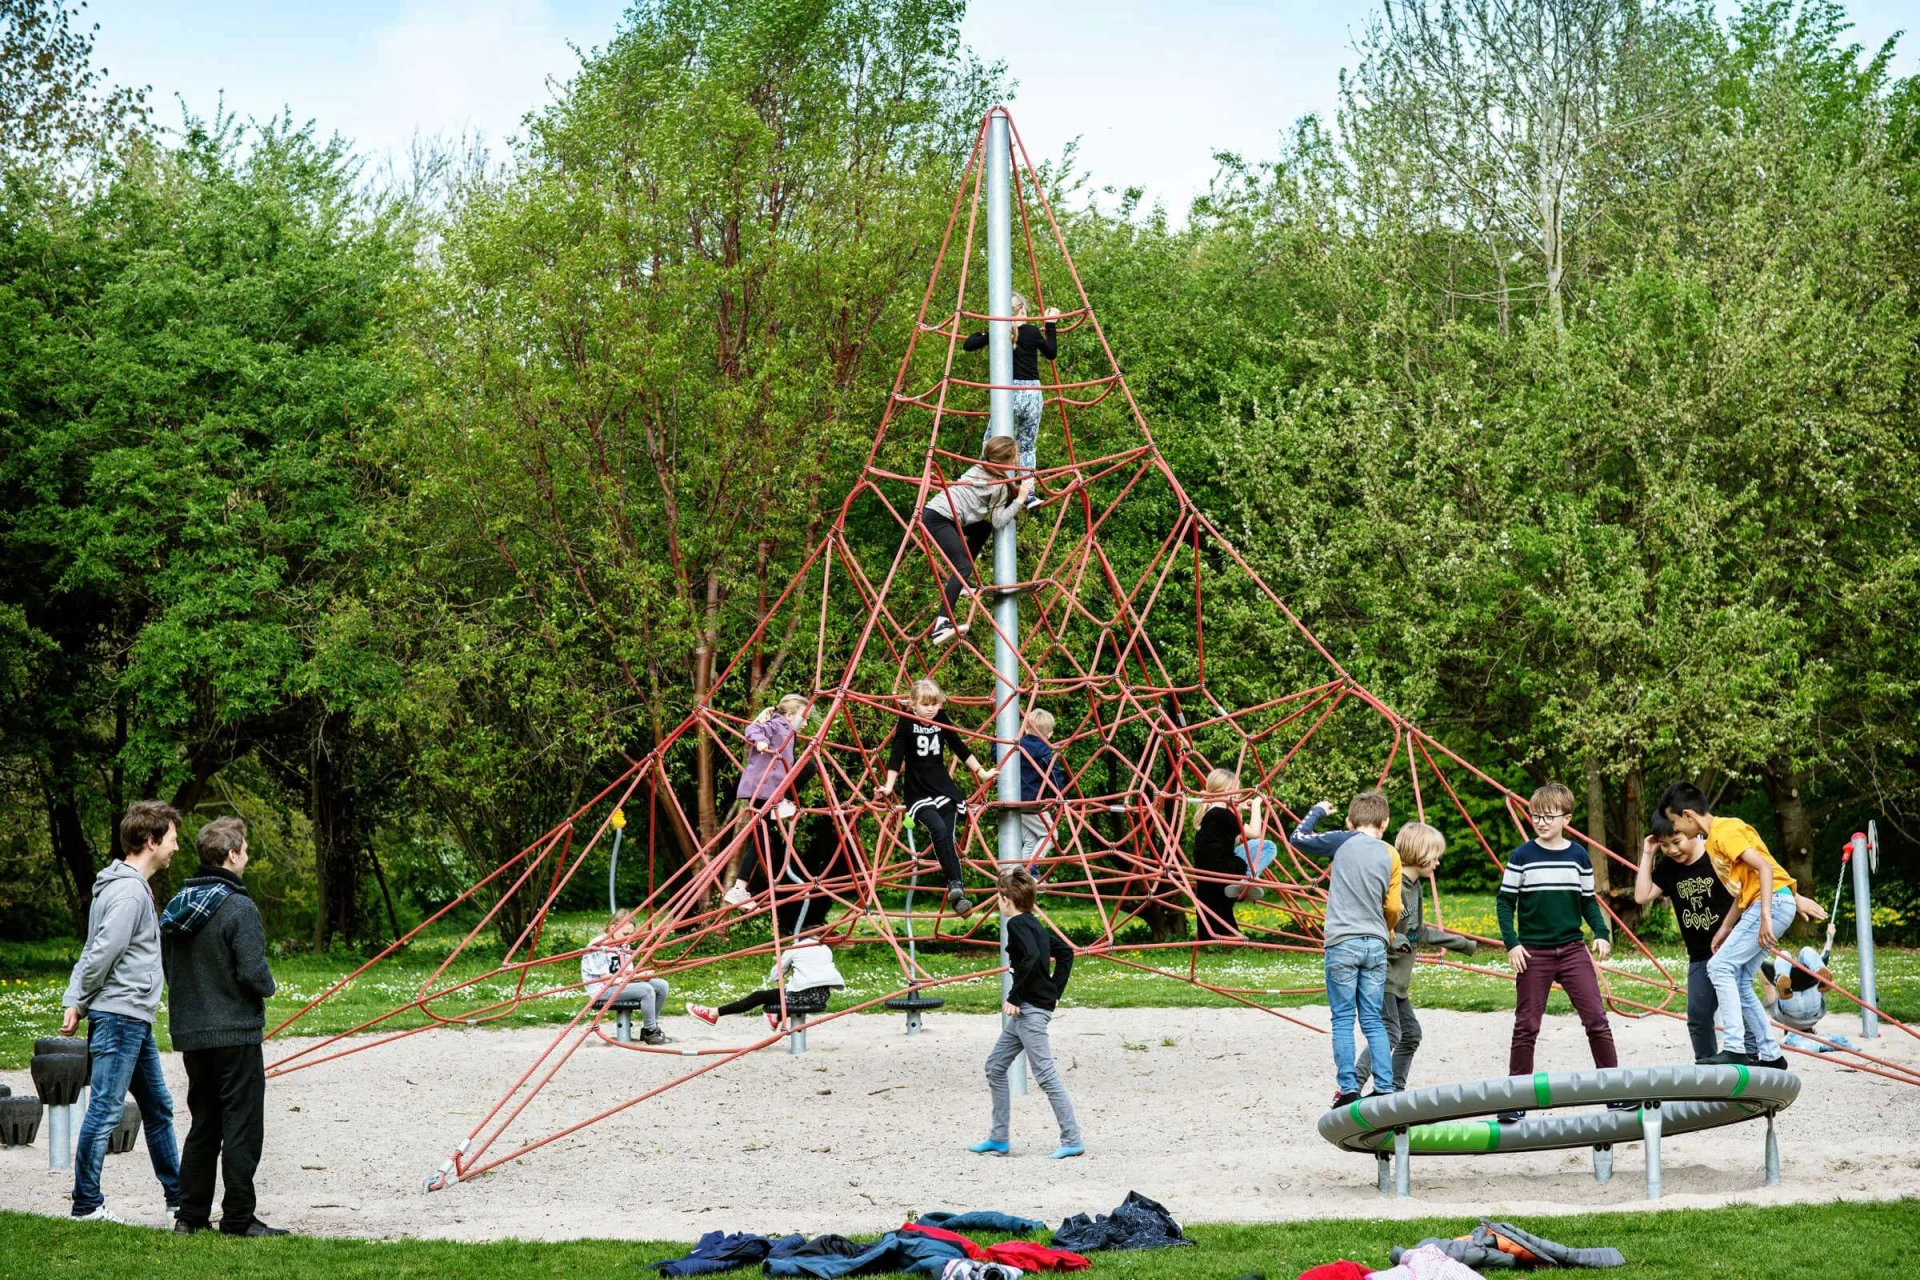 un grupo de personas jugando en una estructura piramidal de escalada en un parque infantil